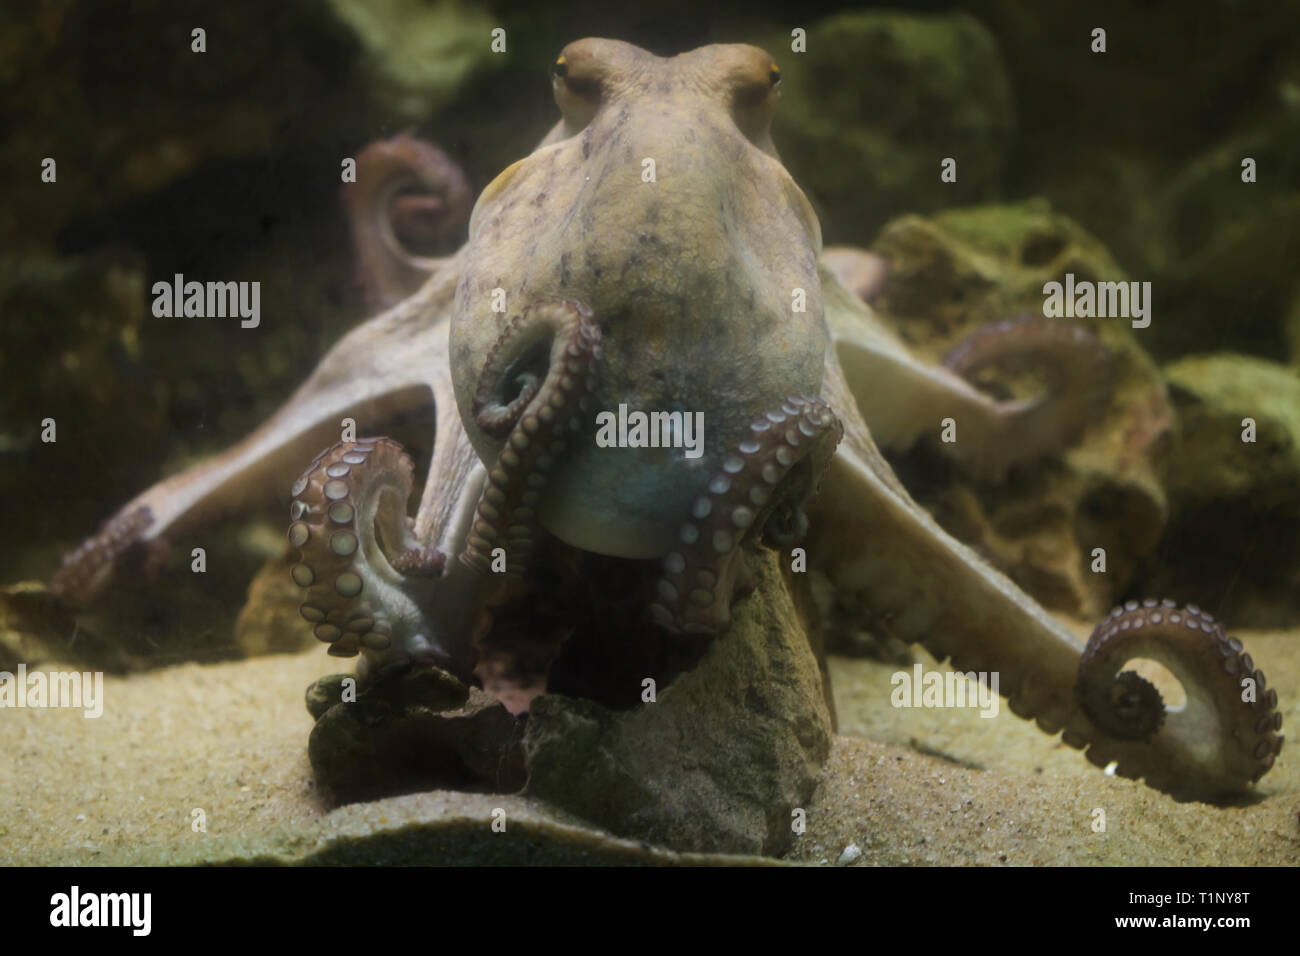 Poulpe commun (Octopus vulgaris), aussi connu comme la pieuvre. Banque D'Images